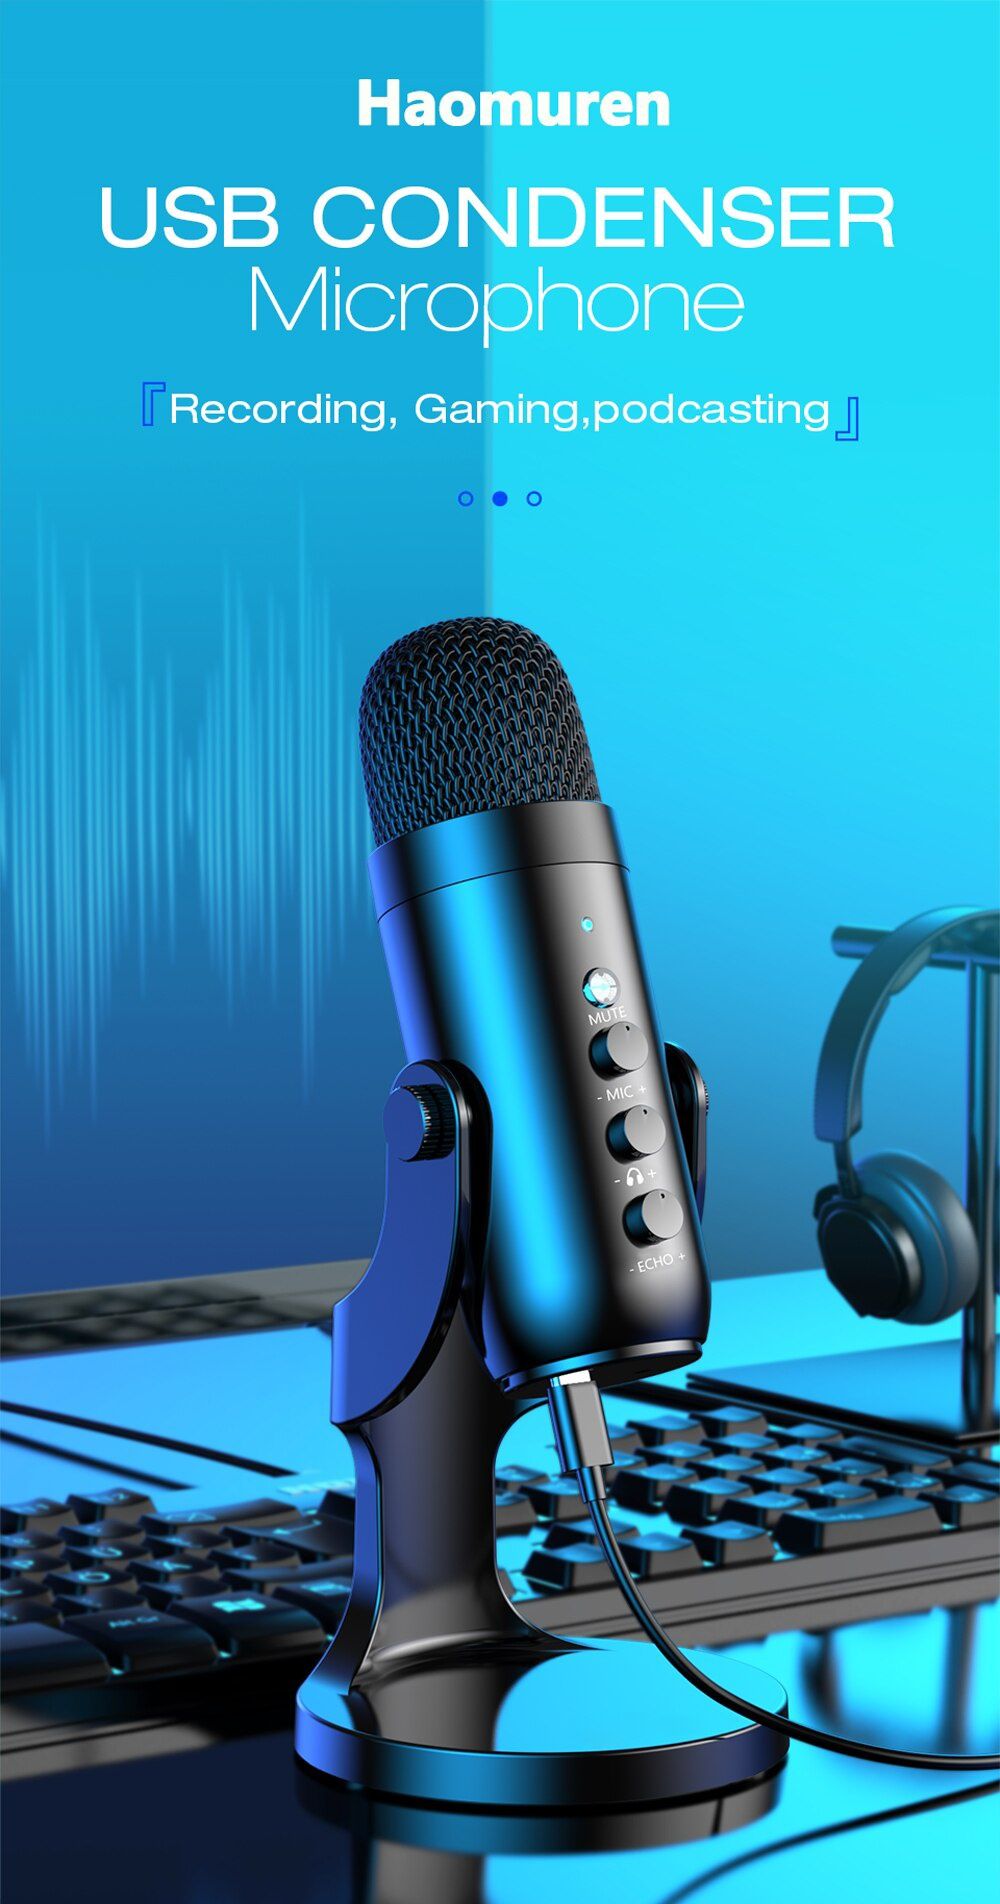 Microfone de estúdio profissional podcast streaming gravação NOVO